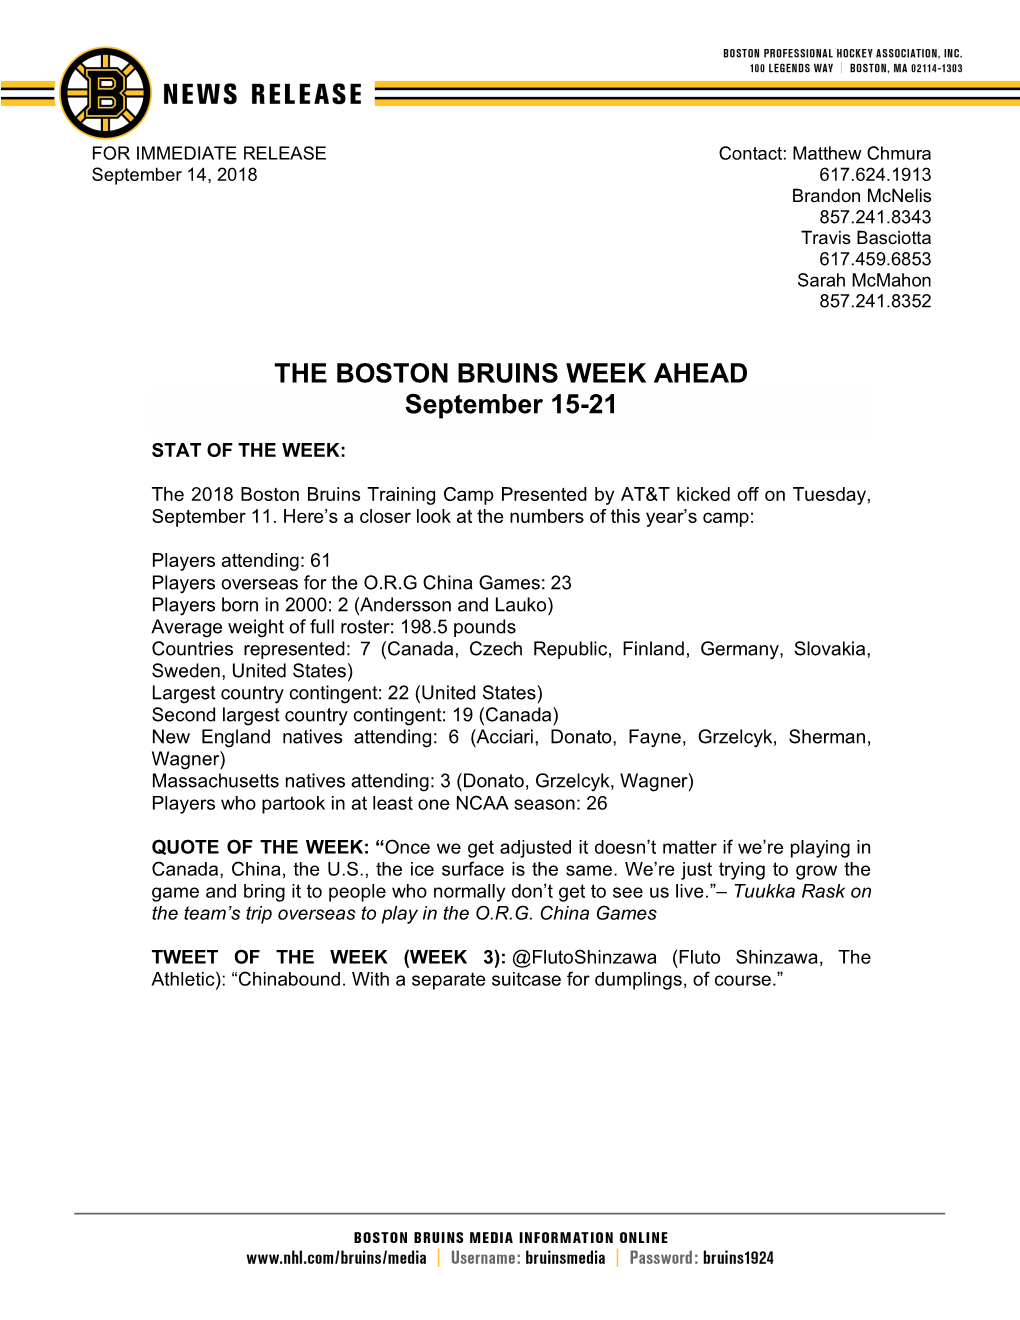 THE BOSTON BRUINS WEEK AHEAD September 15-21